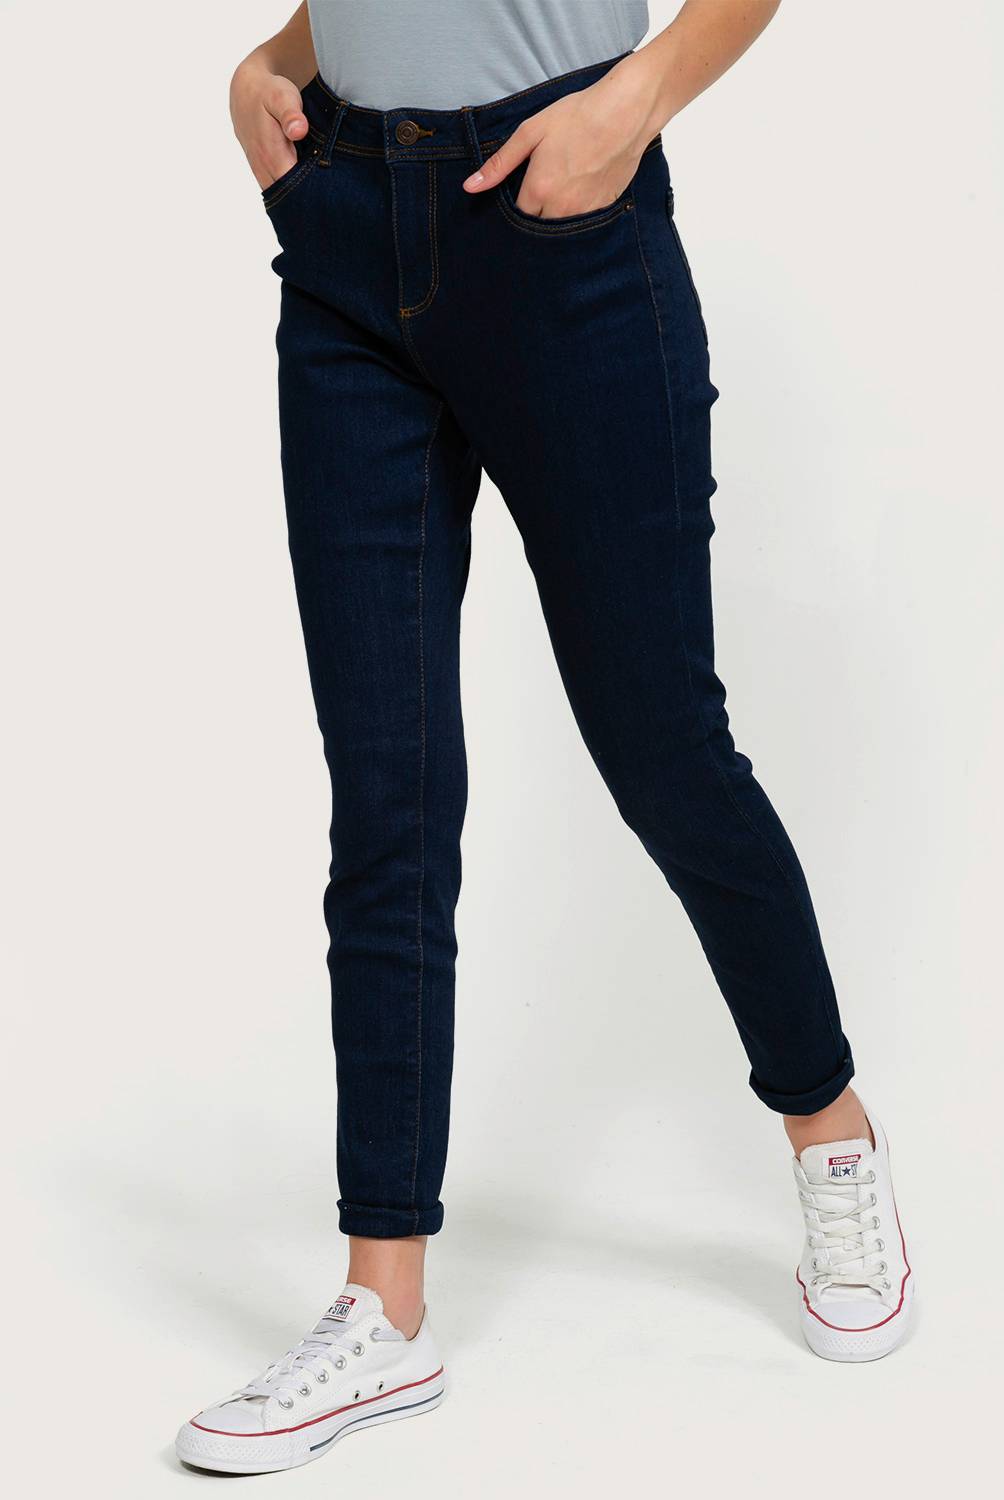 Vero Moda - Jeans Largo Mujer Skinny